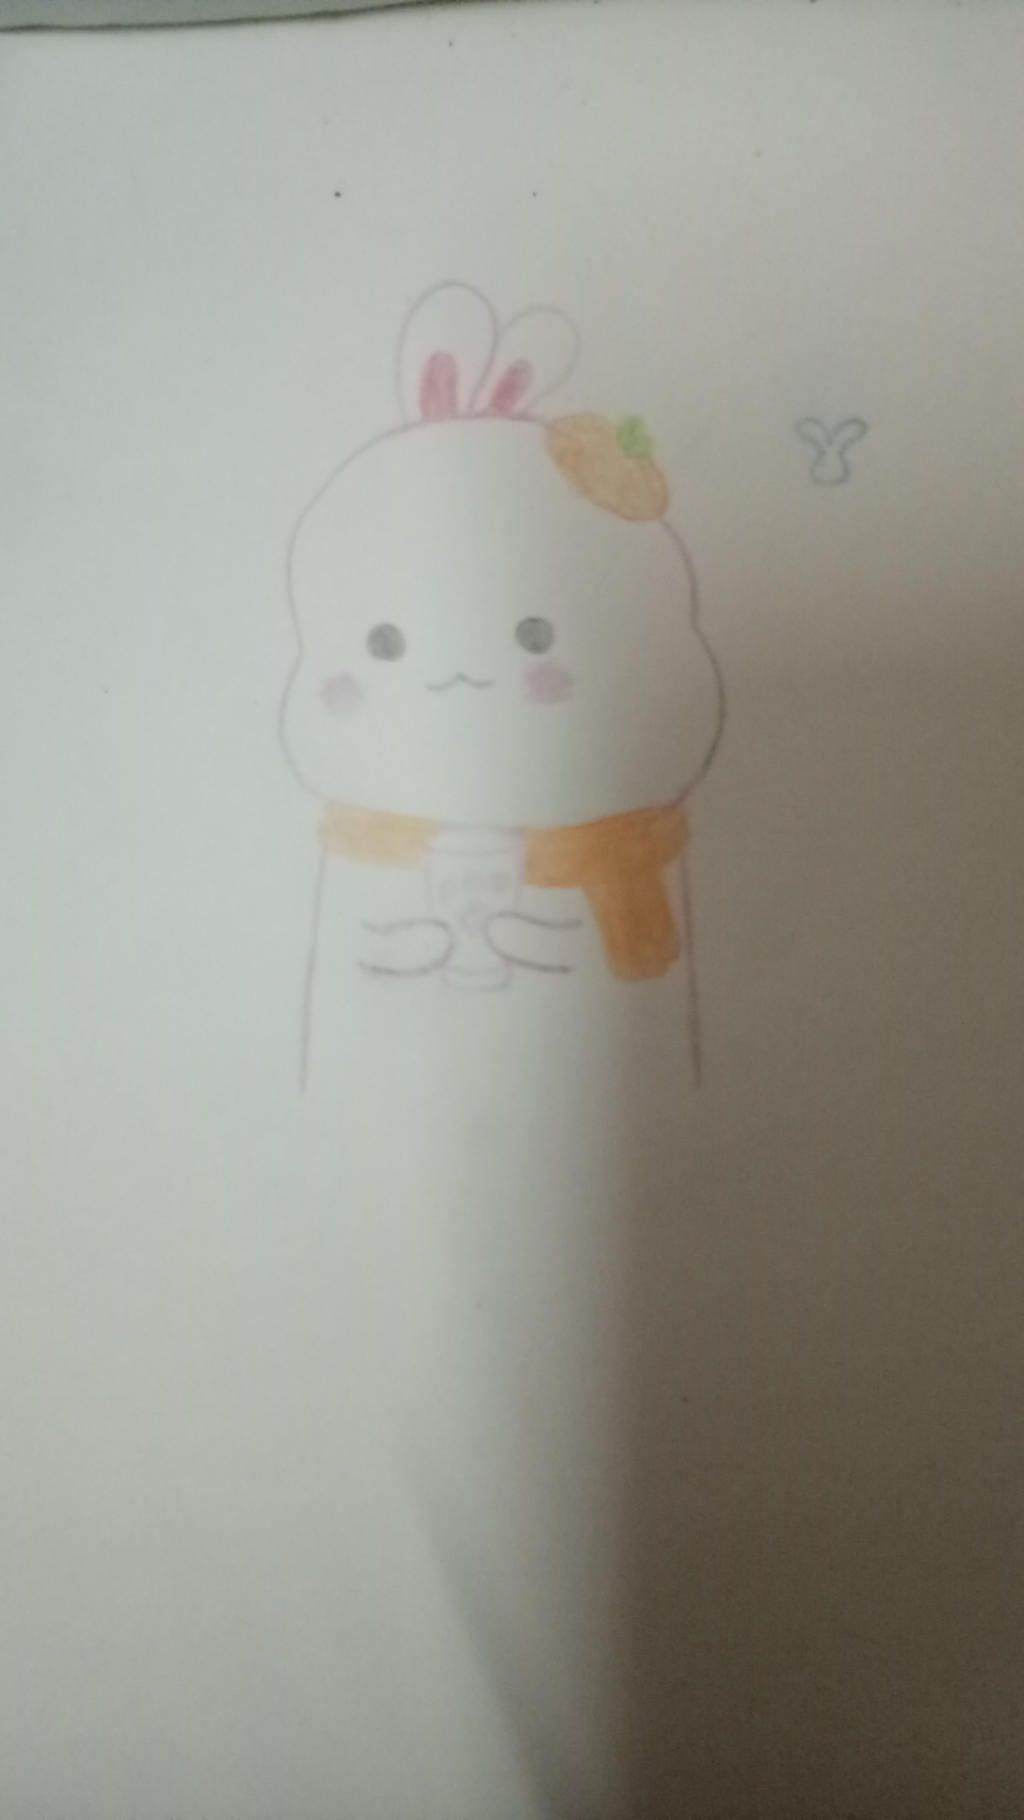 Vẽ thỏ Chibi: Nếu bạn yêu thích thỏ Chibi và muốn vẽ những bức tranh đáng yêu của chúng, hãy xem các hình ảnh về thỏ Chibi. Bạn sẽ tìm thấy nhiều ý tưởng mới lạ và độc đáo để vẽ những bức tranh thỏ chibi tuyệt đẹp.